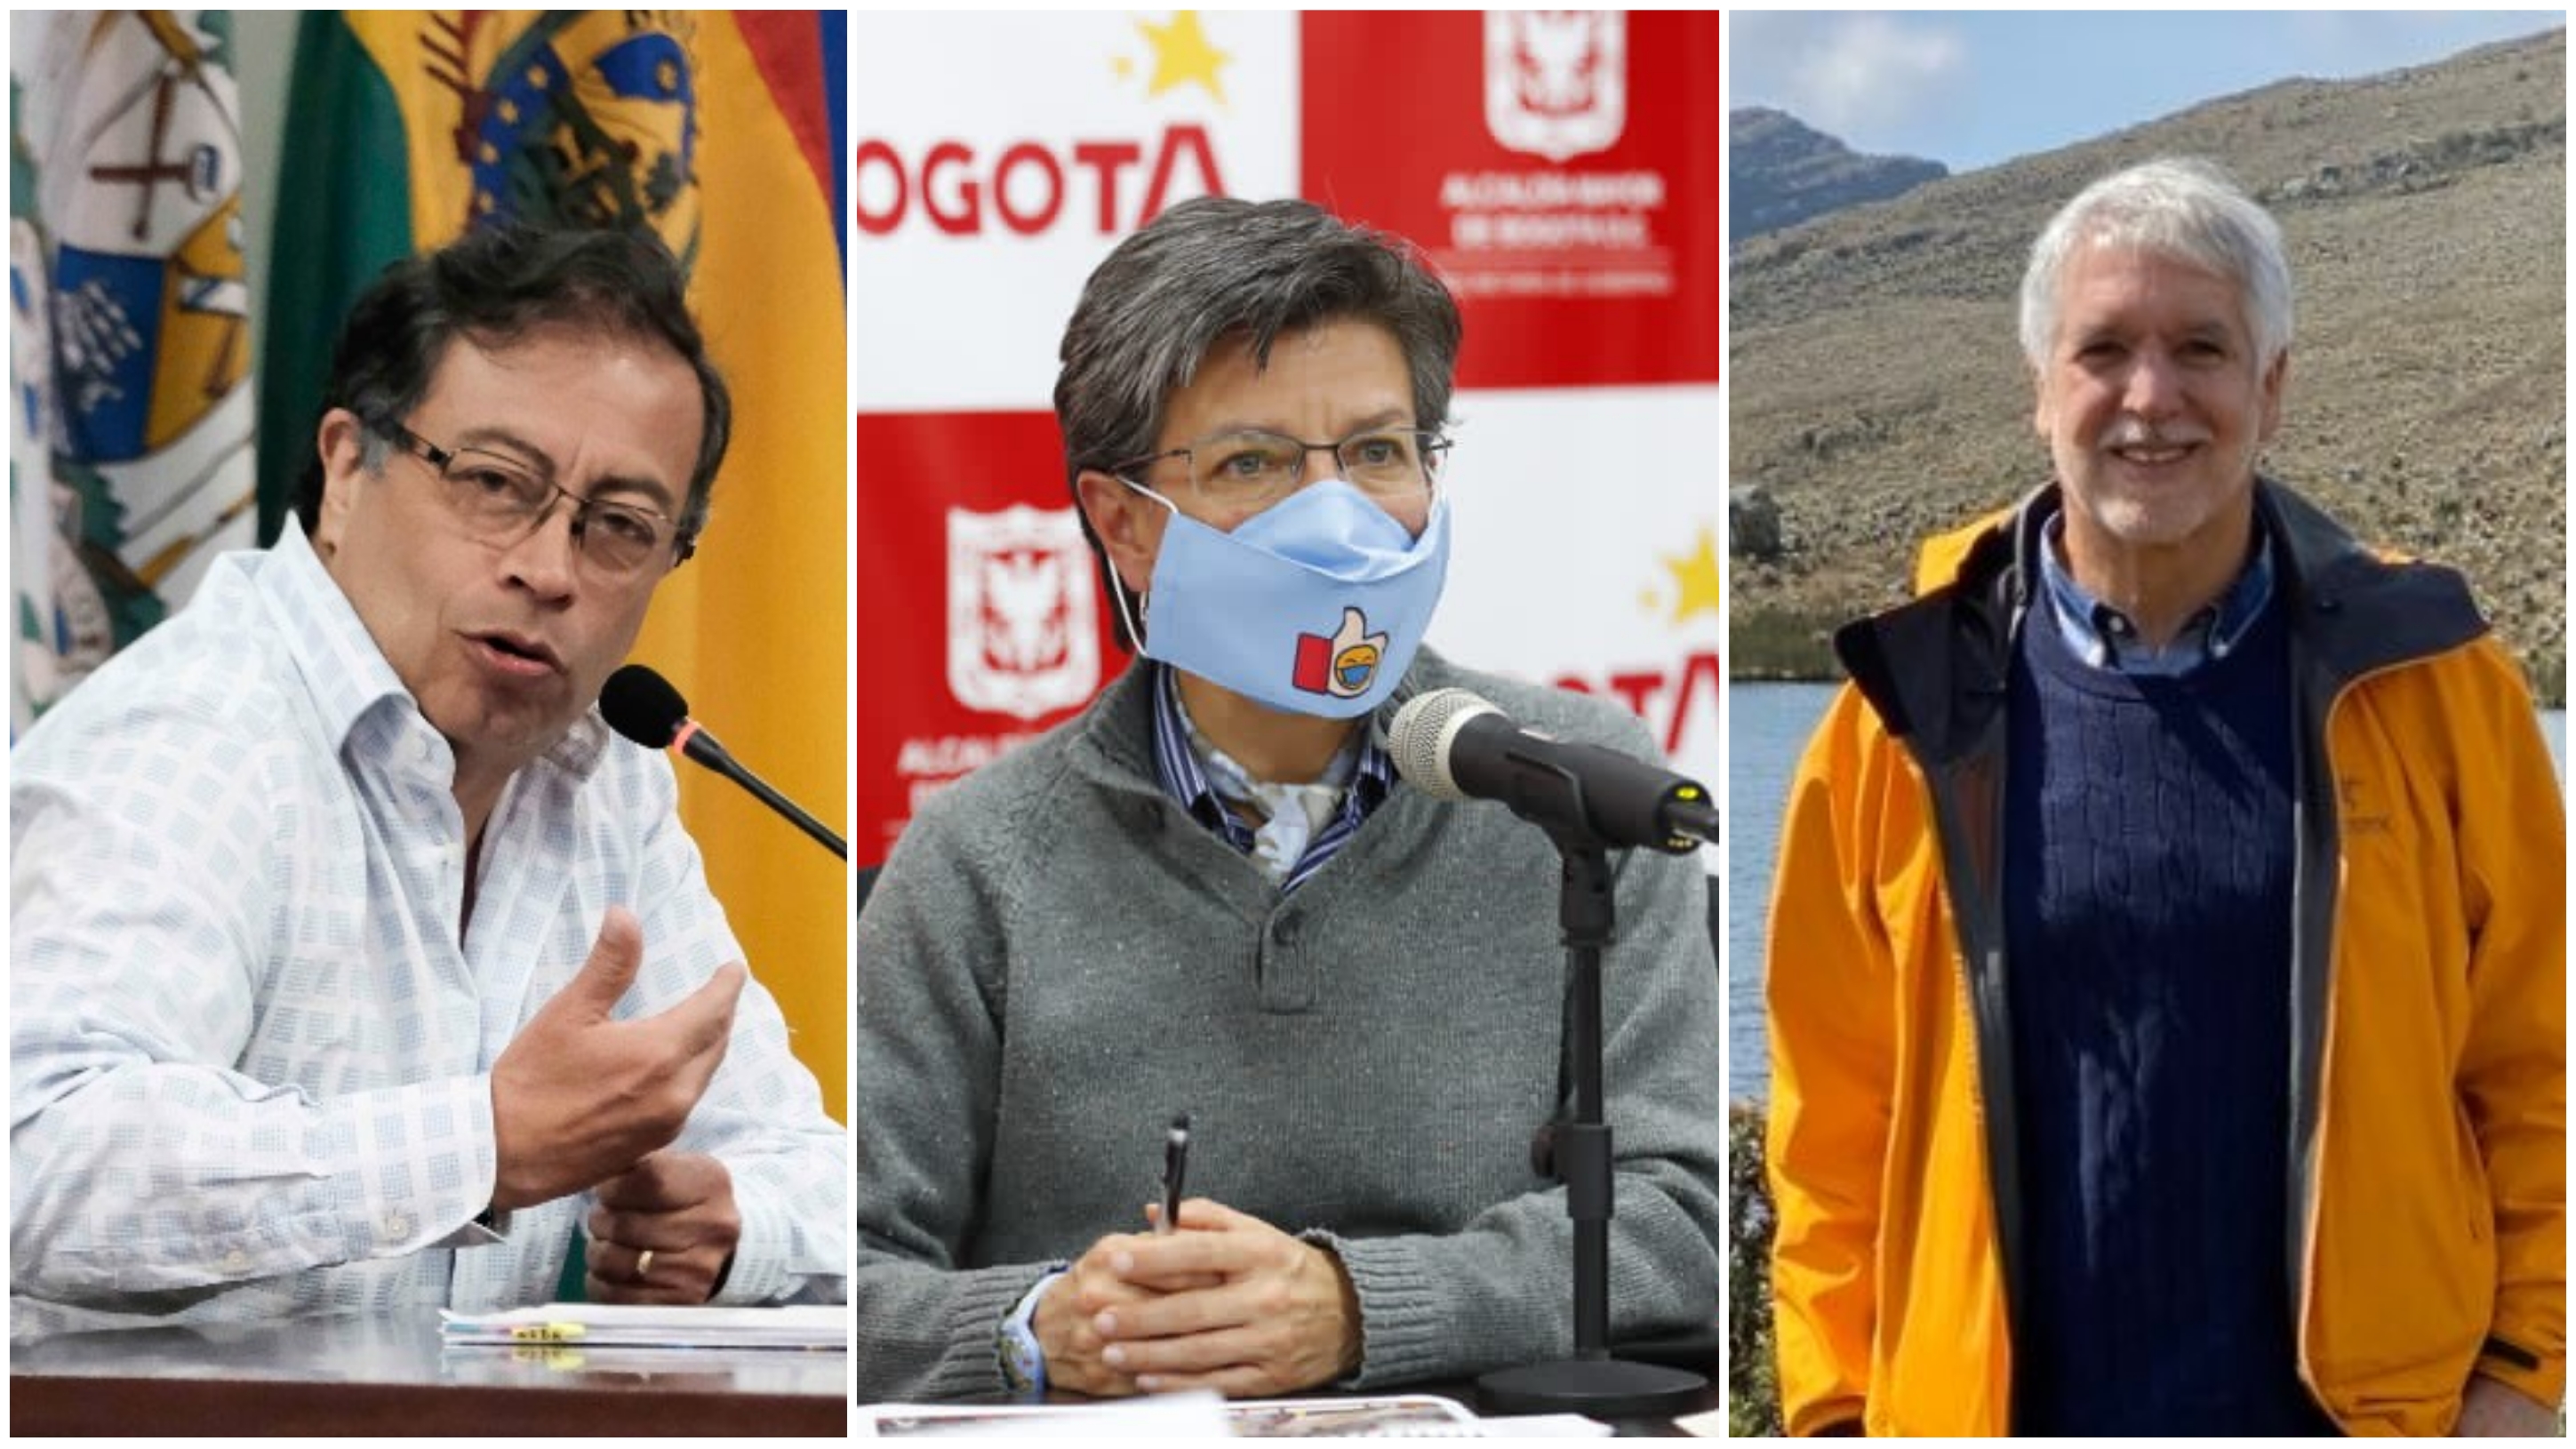 Escándalo sobre la campaña de Petro provocó que hasta la alcaldesa Claudia López coincidiera con Enrique Peñalosa